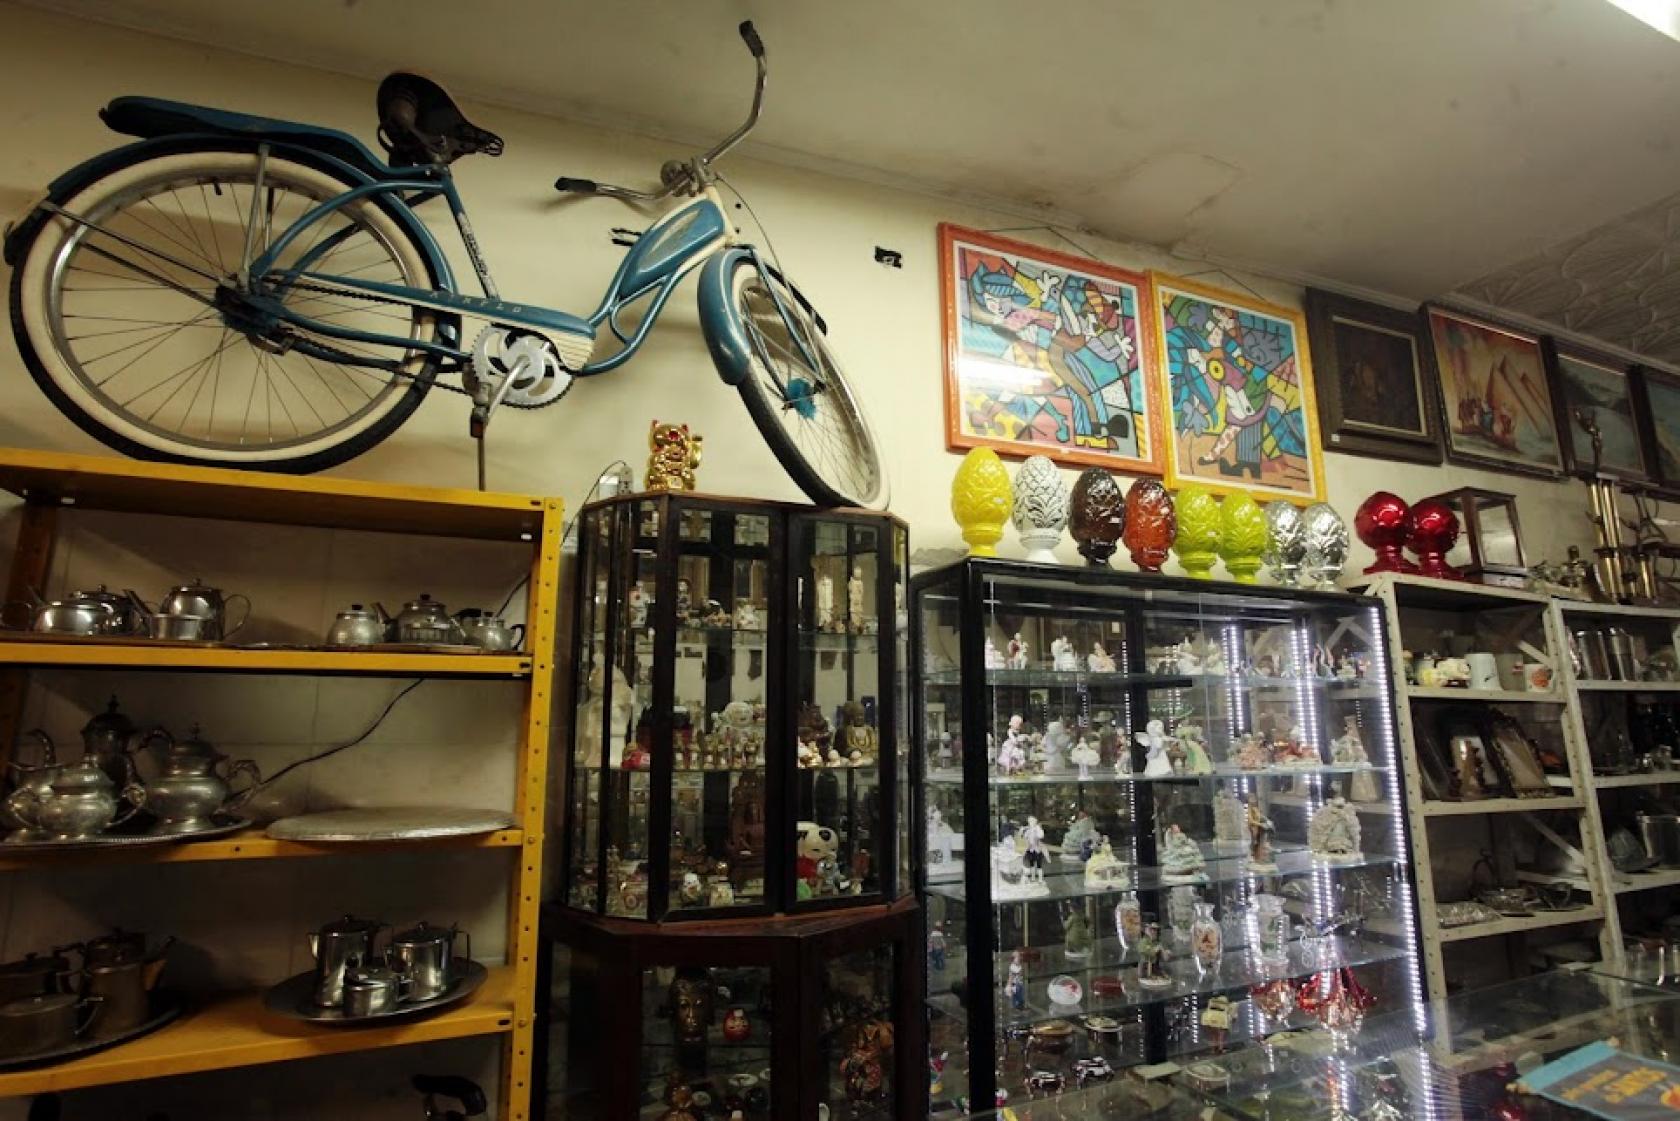 mobiliário antigo em antiquário. Há cristaleiras cheias de objetos, bicicleta e quadros na parede. #paratodosverem